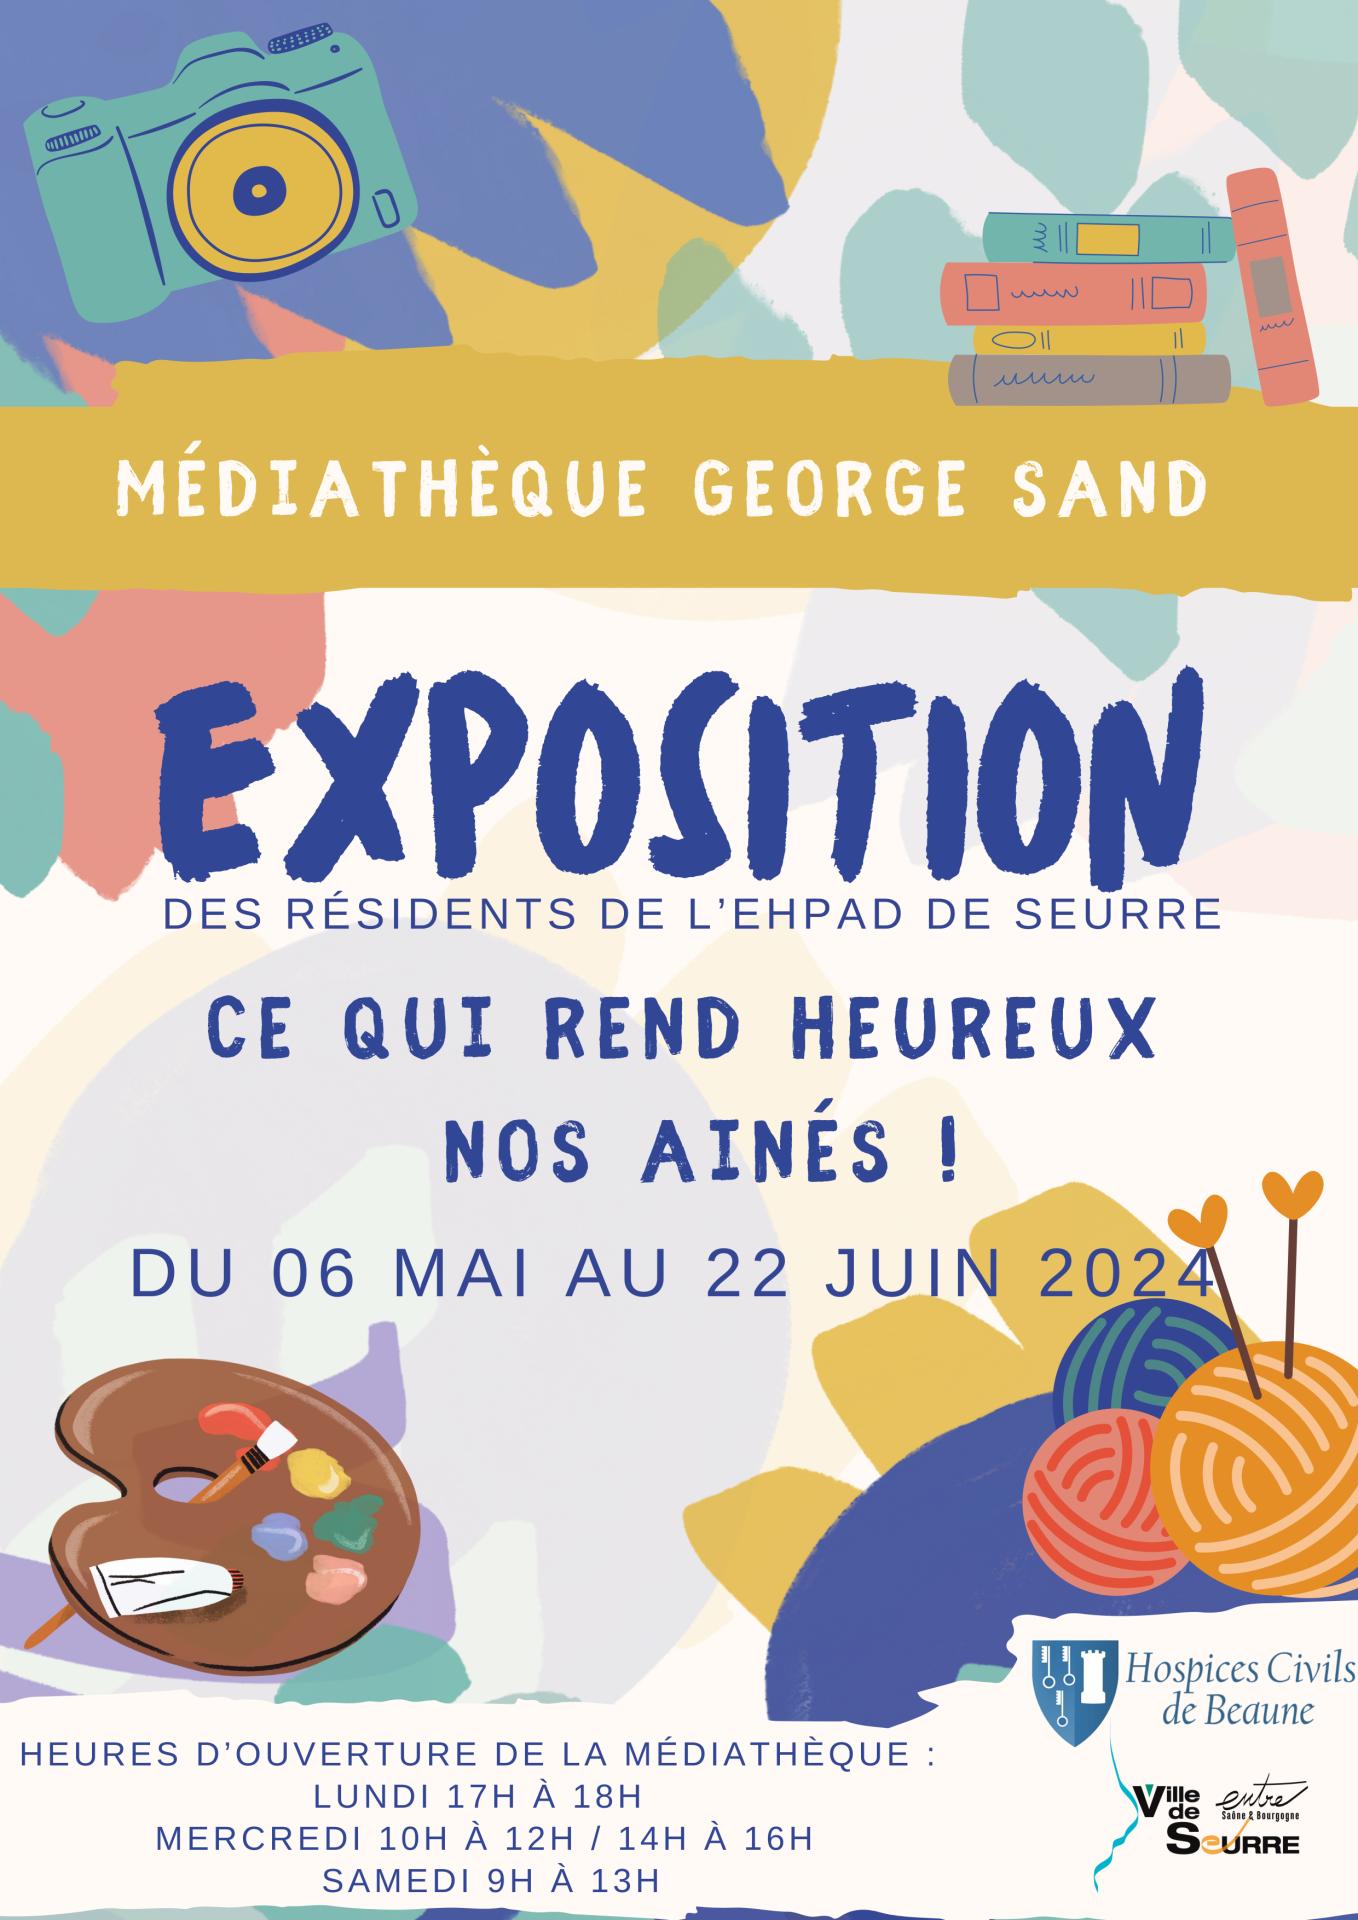 Médiathèque George Sand - Exposition des résidents de l'Ehpad